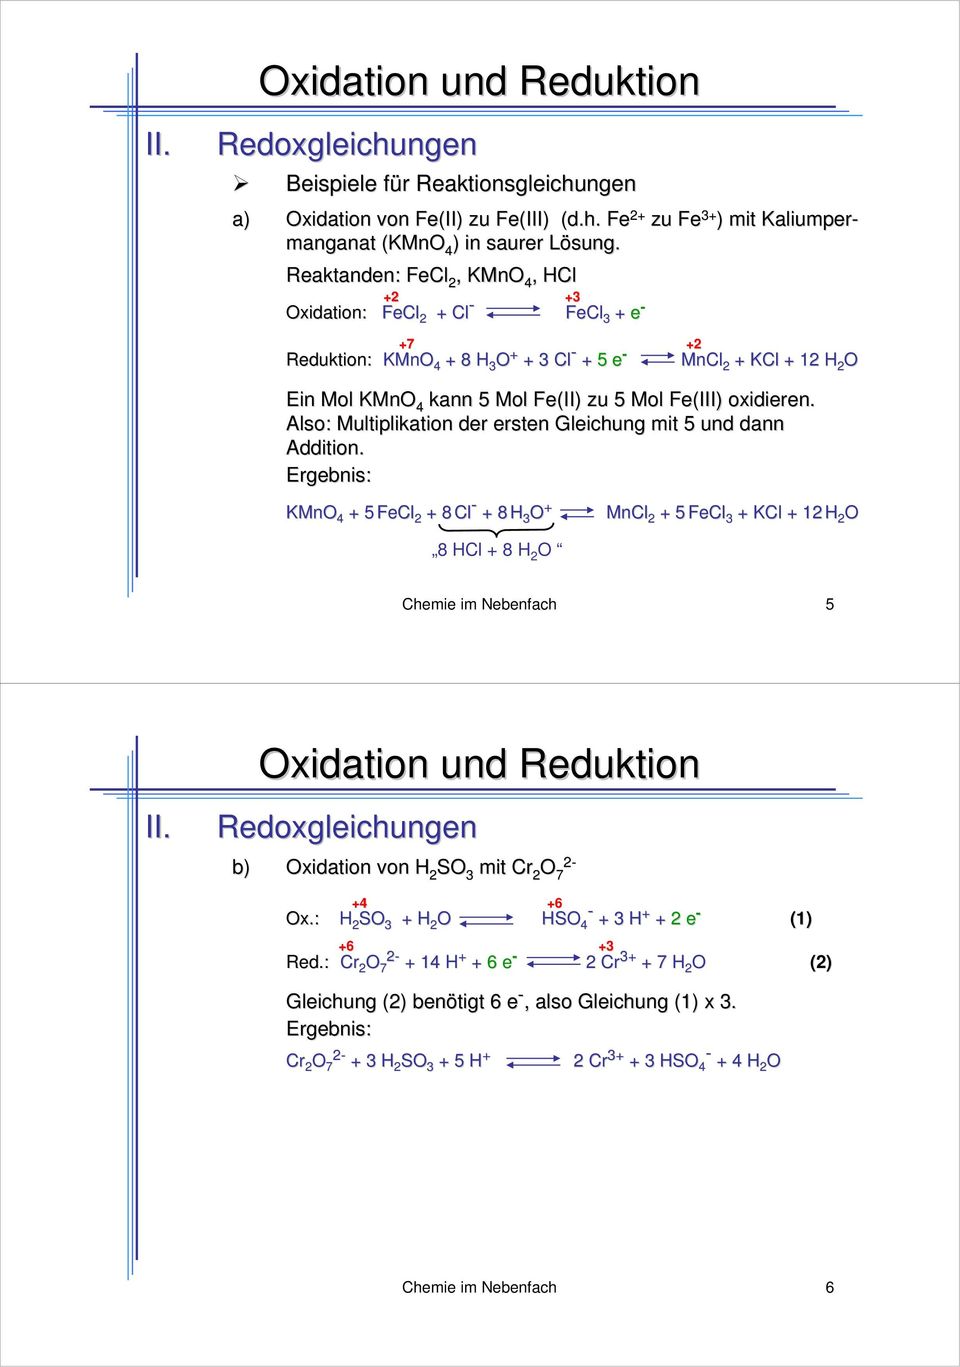 Fe(III) oxidieren. Also: Multiplikation der ersten Gleichung mit 5 und dann Addition.